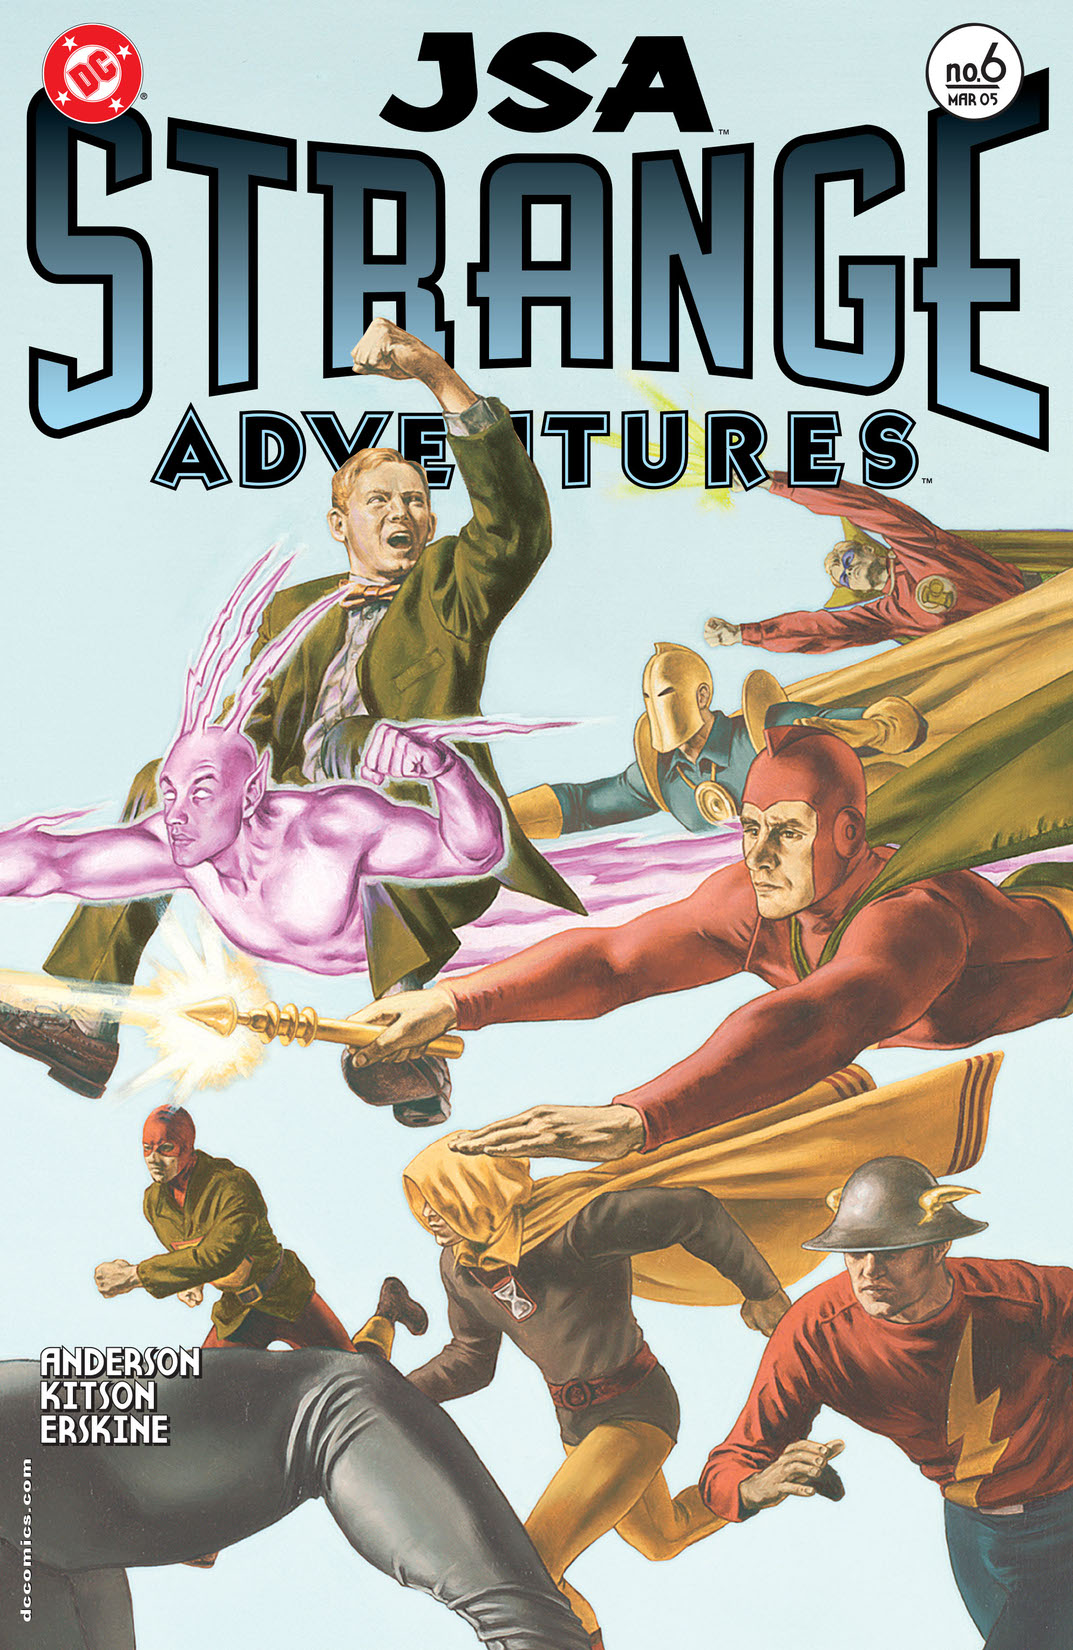 JSA: Strange Adventures #6 preview images